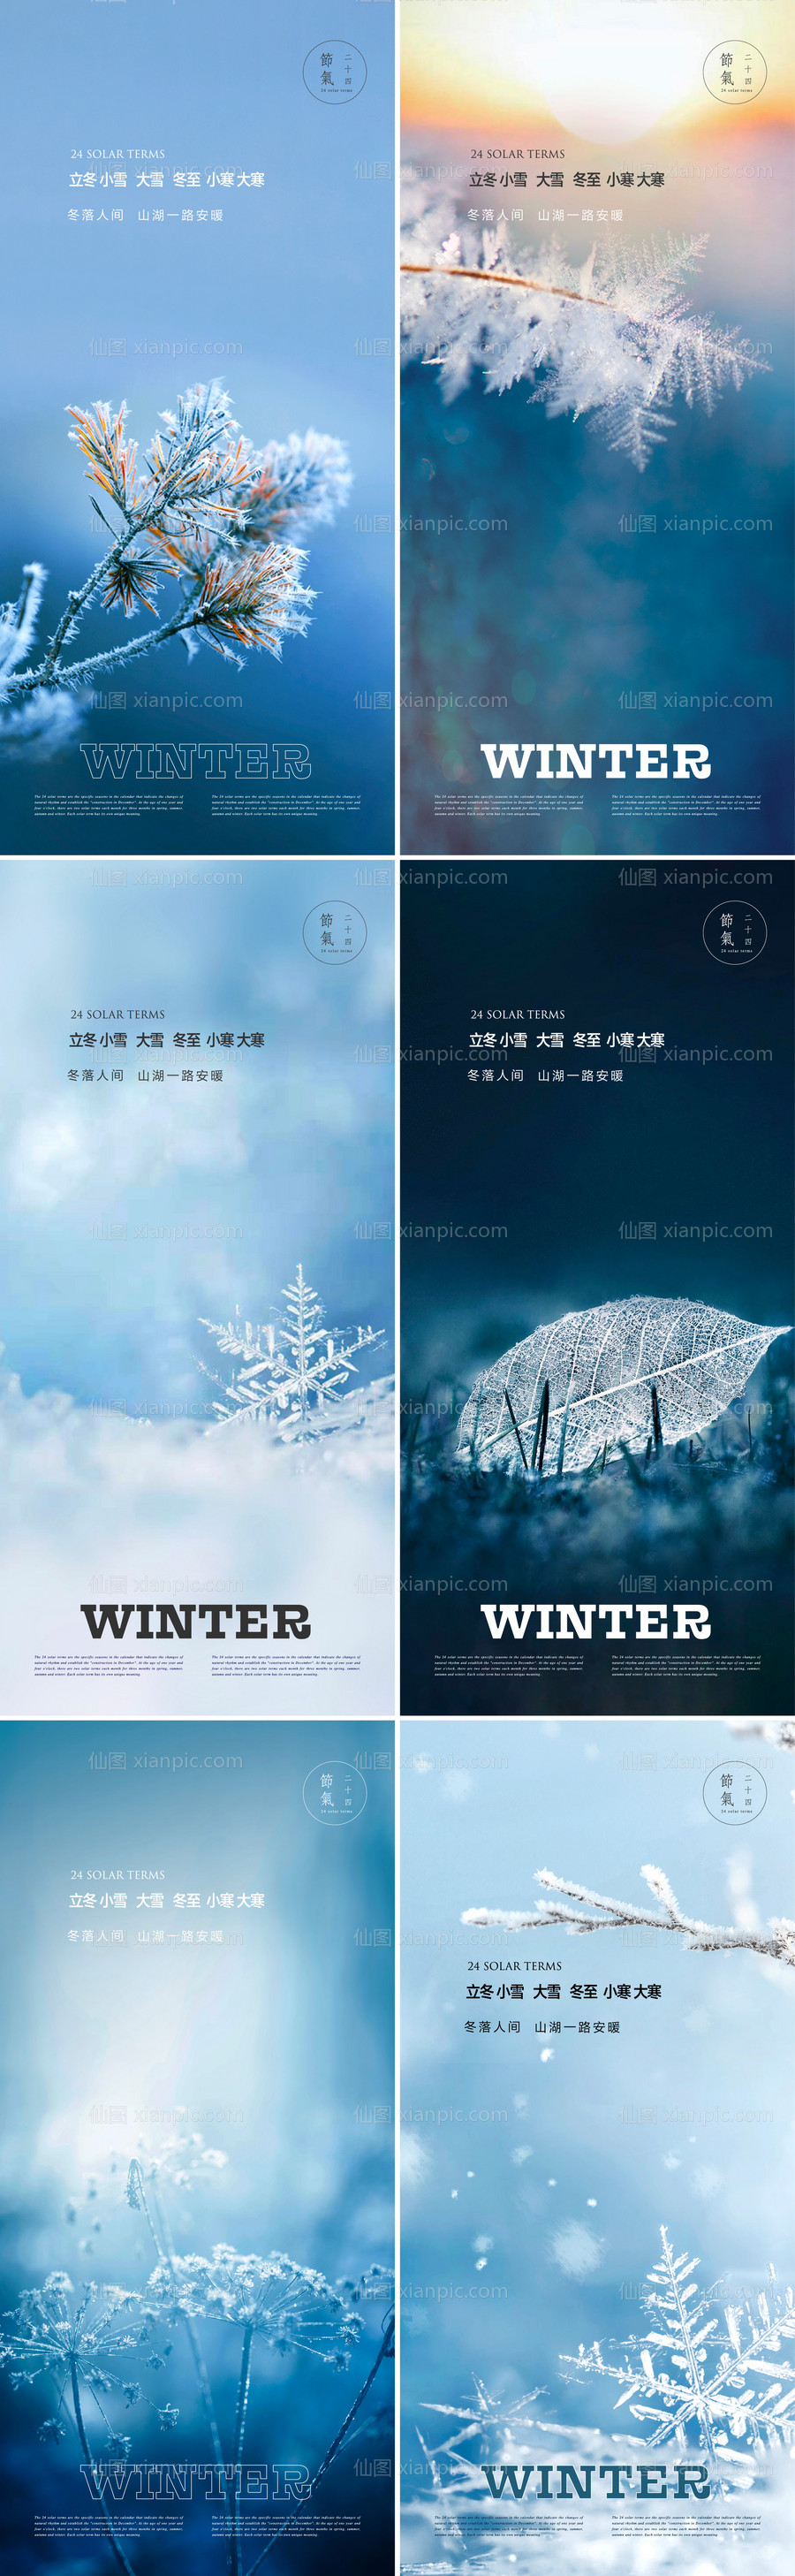 素材乐-冬季节气系列